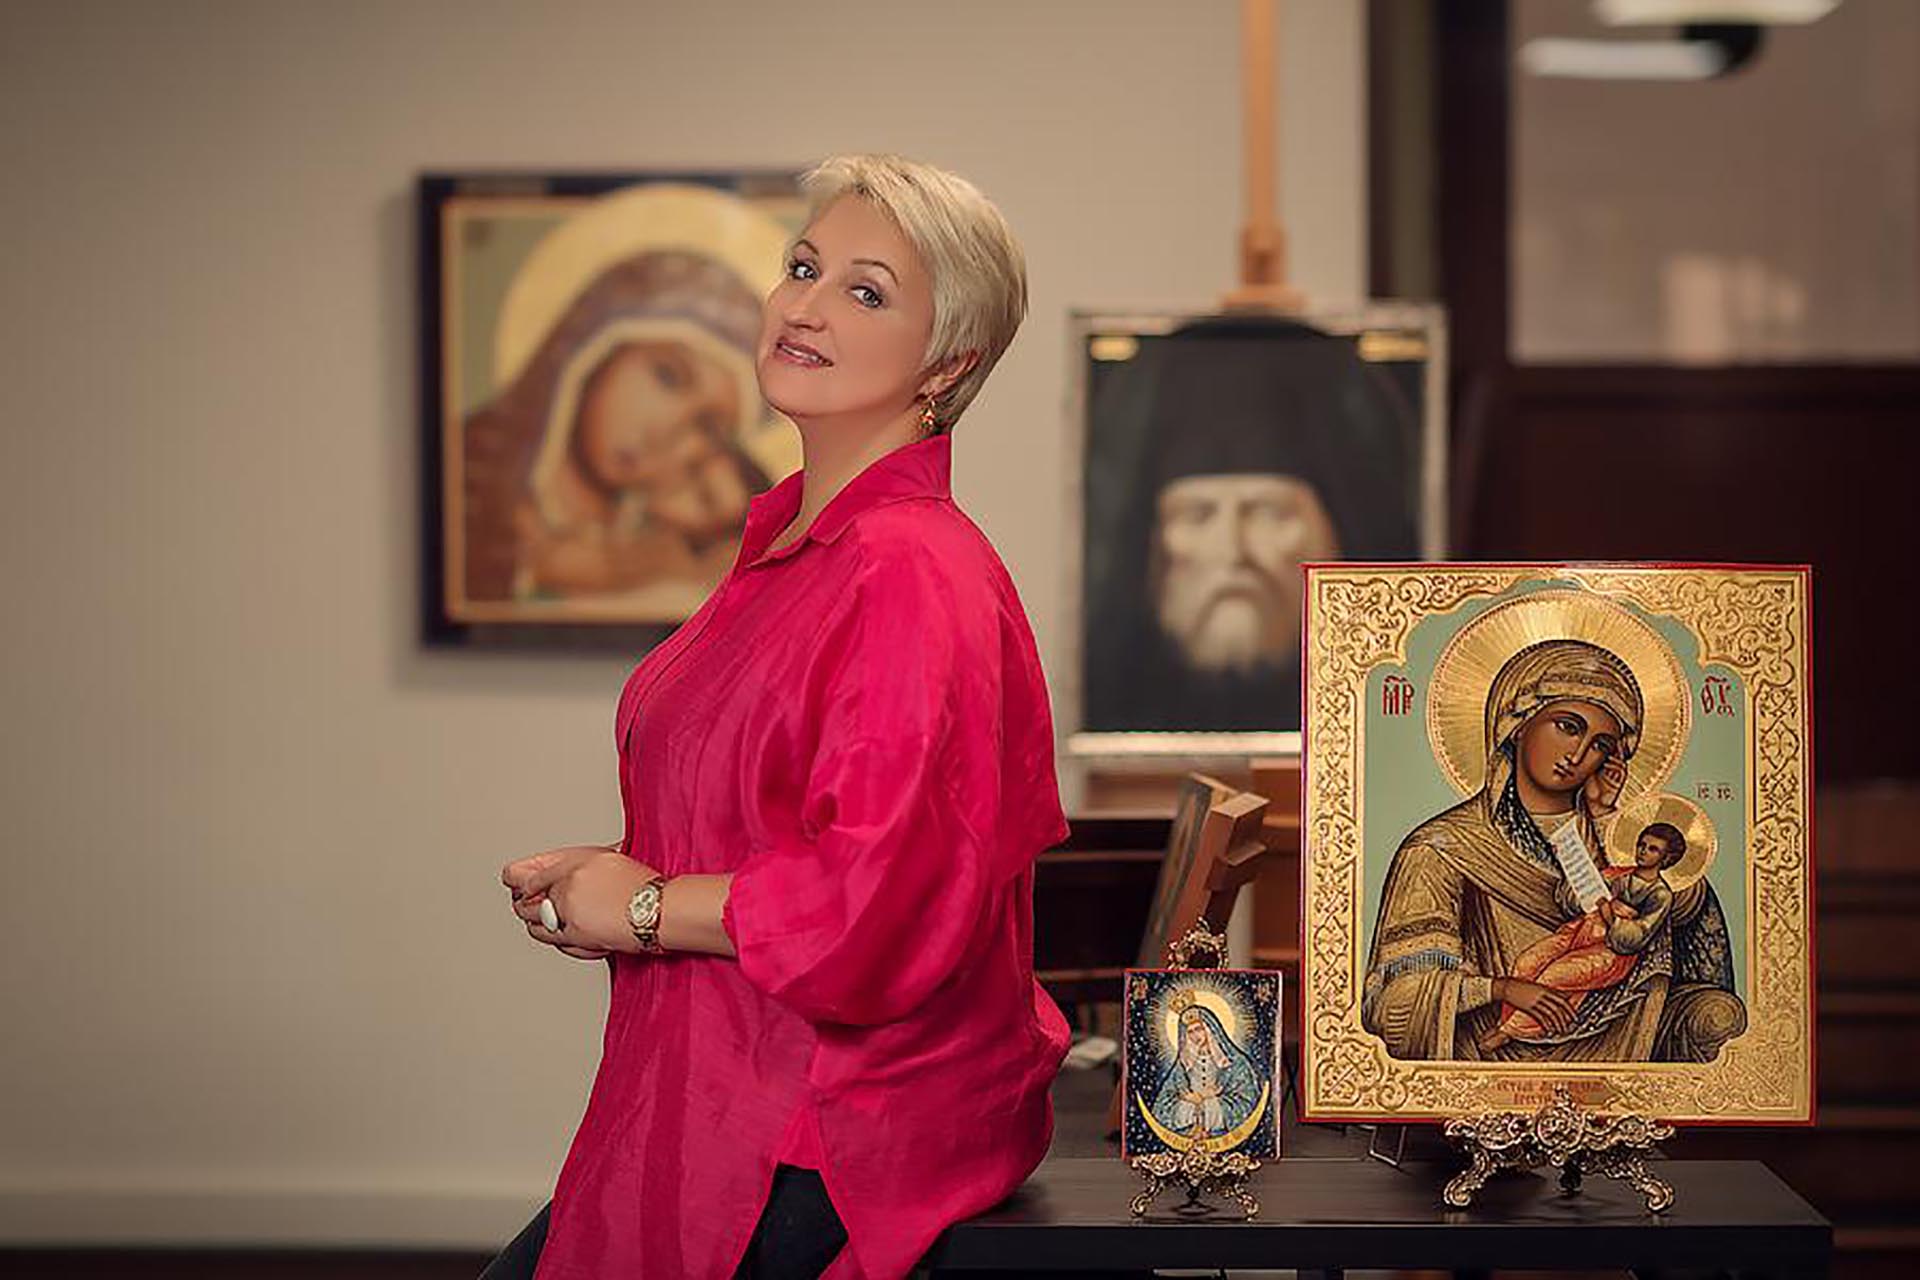 Наталья Татаркина, руководитель частной галереи современной иконы «Создавая наследие»